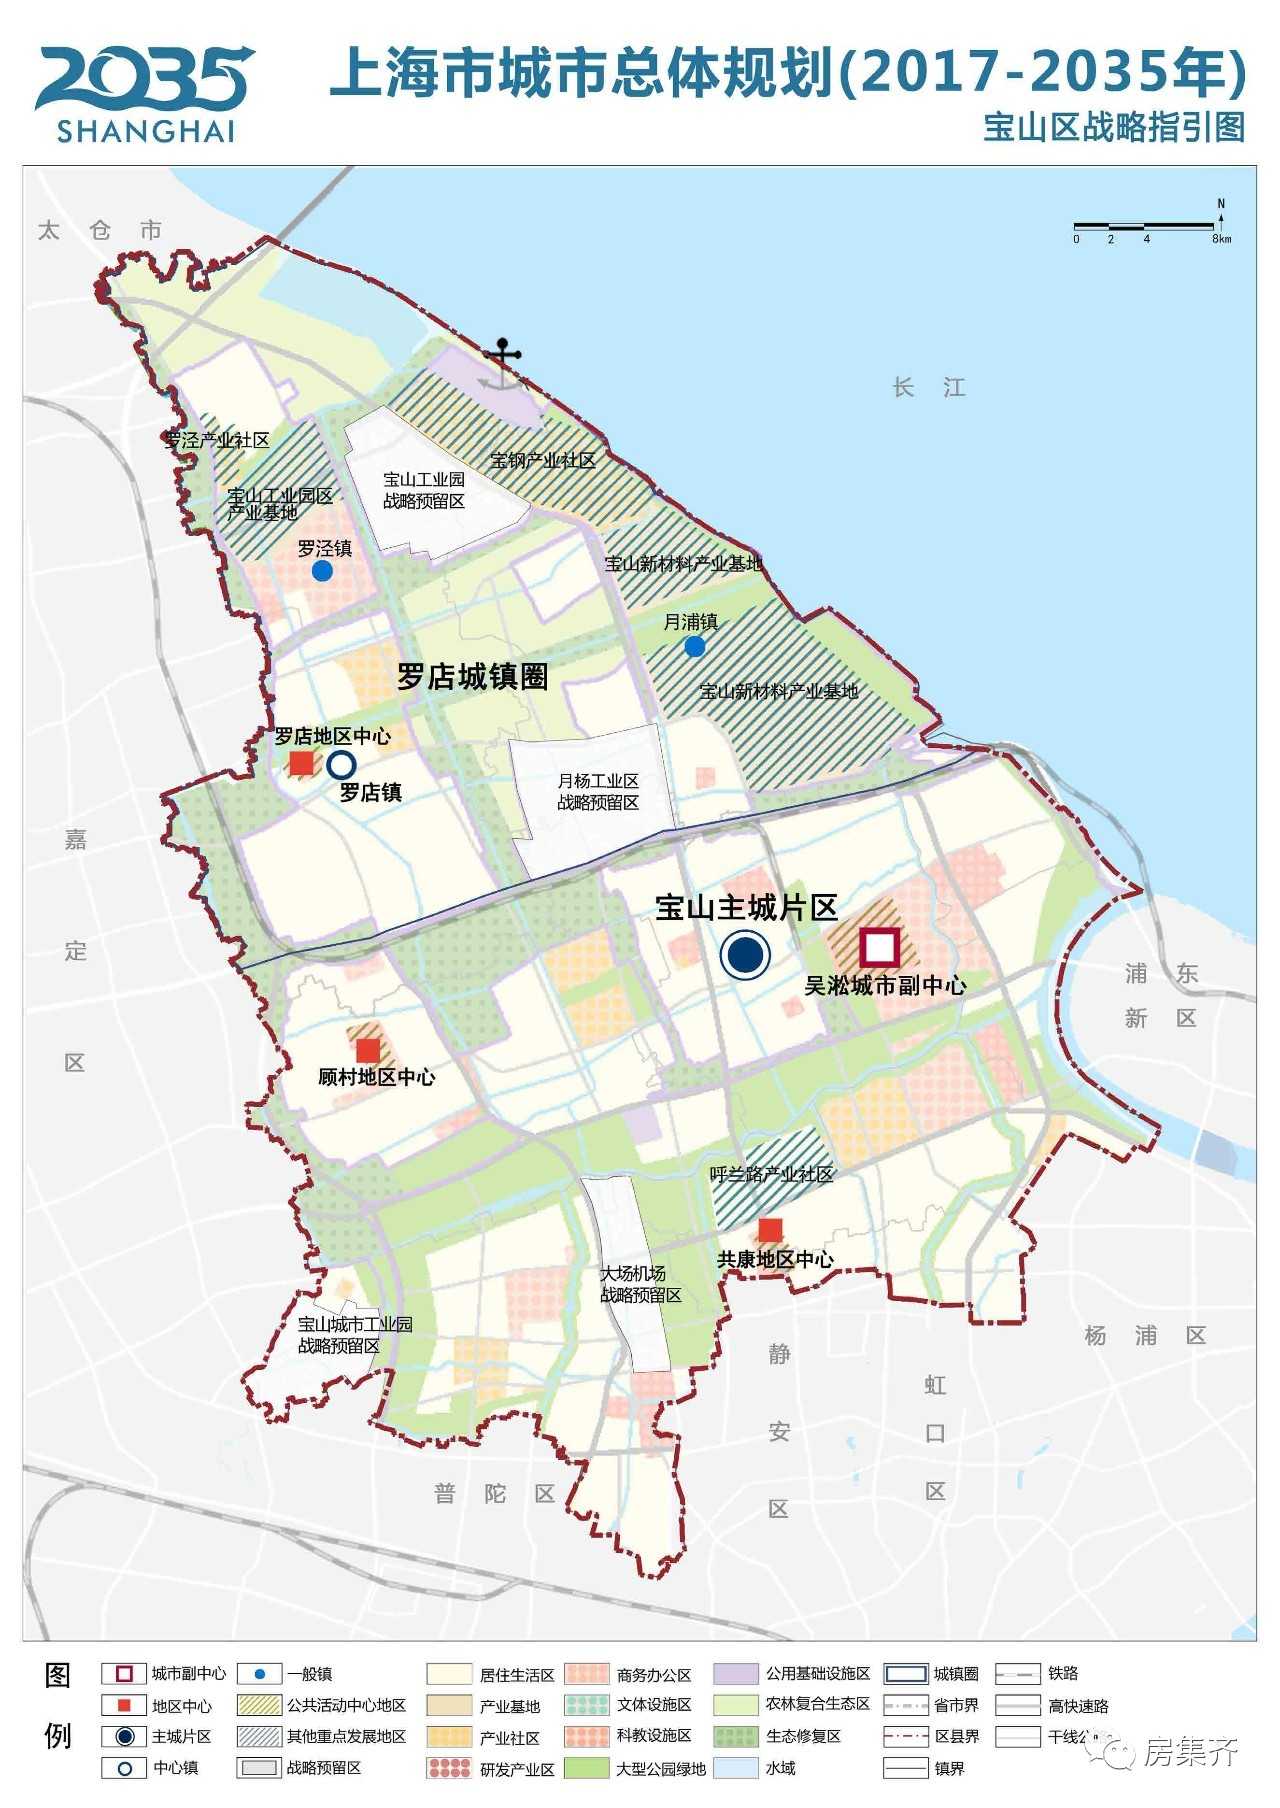 的基础上制作了《上海市城市总体规划(2017-2035)-十六区战略指引》